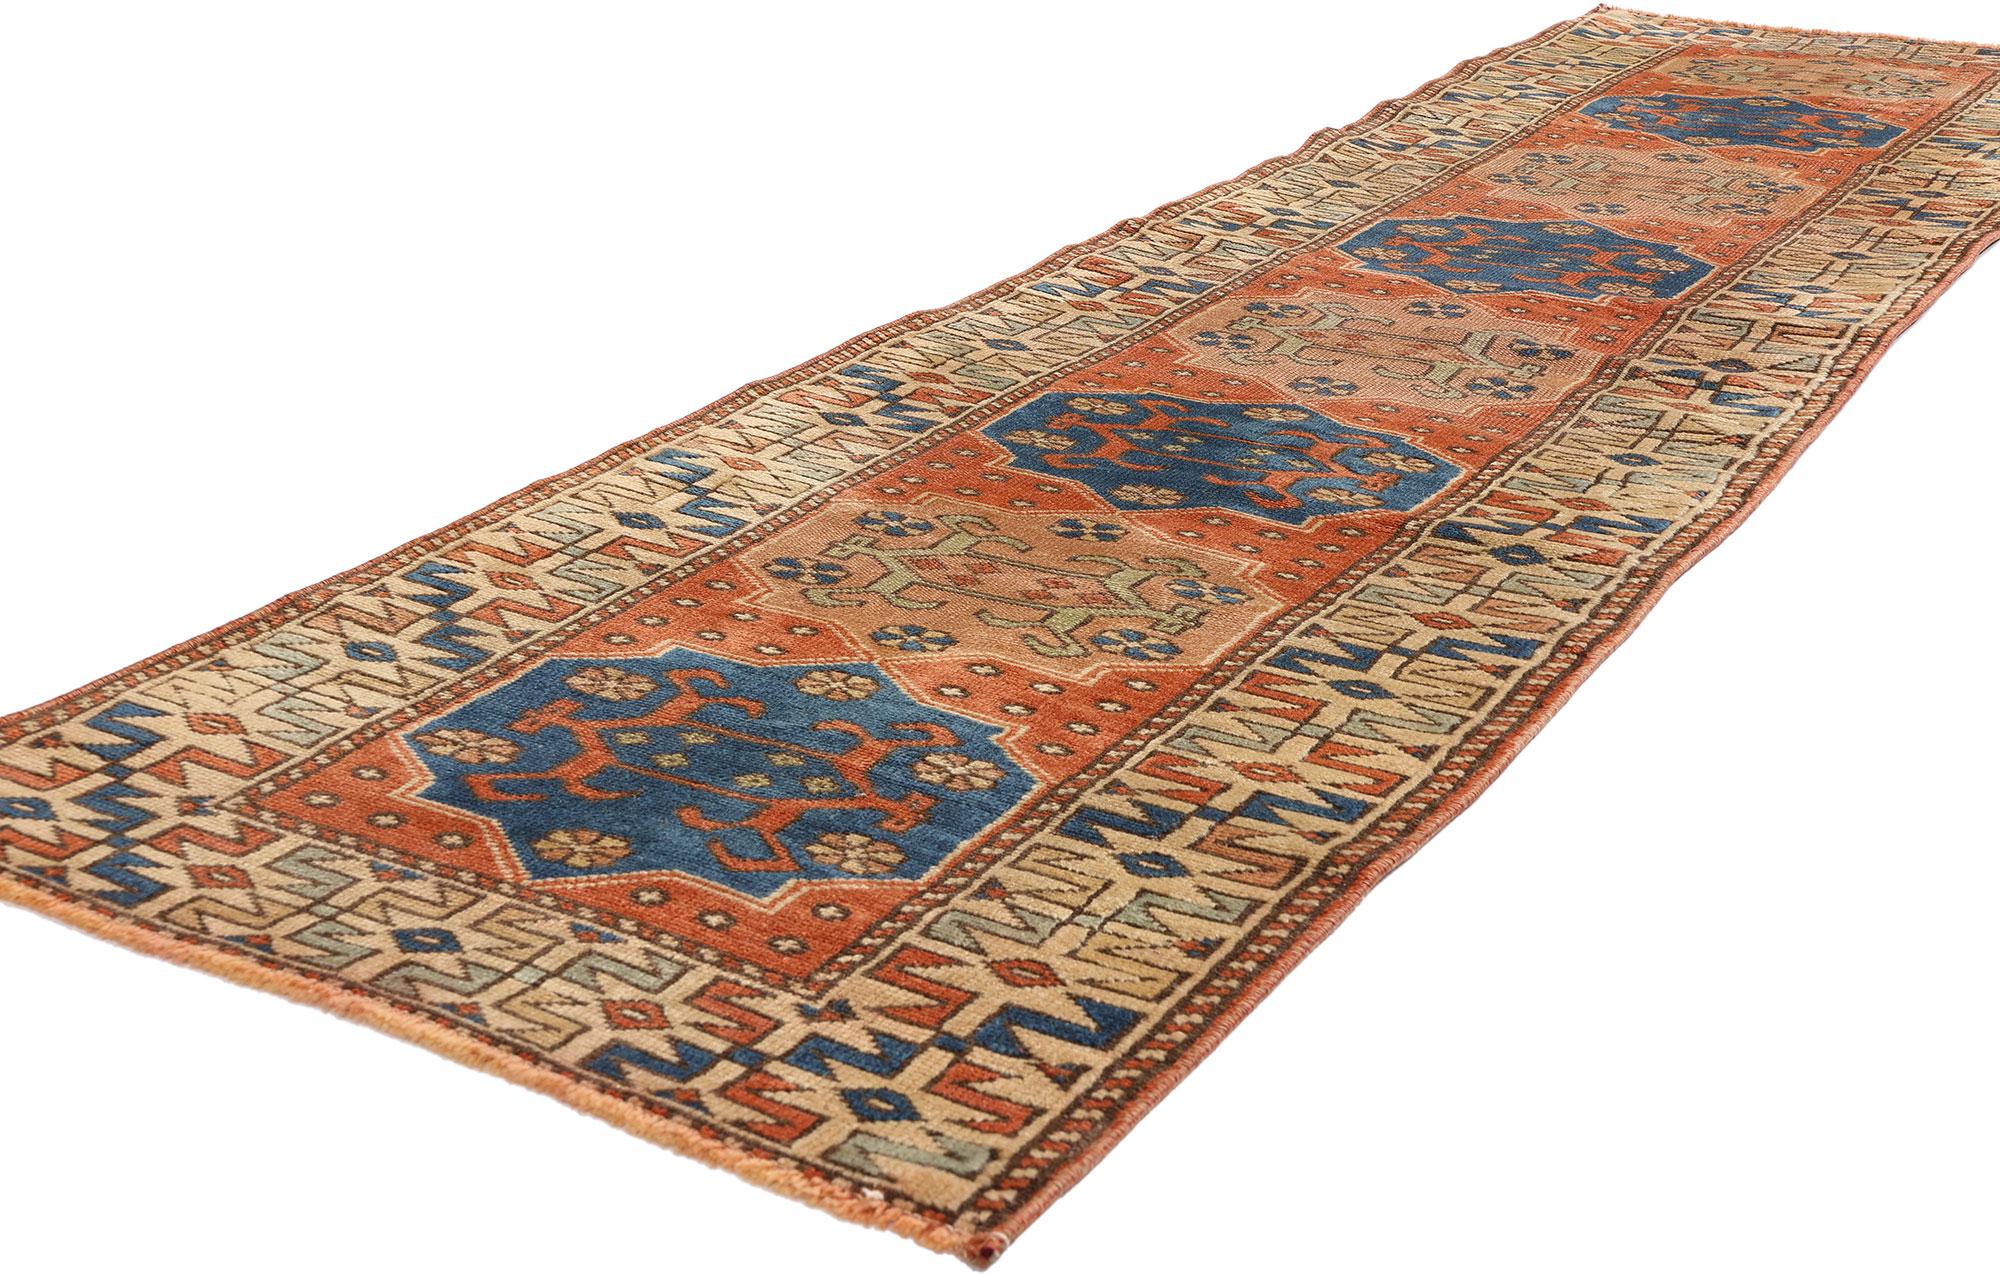 53943 Vintage Persian Hamadan Rug Runner, 02'01 x 08'05. Persische Hamadan-Teppichläufer sind sorgfältig handgewebte Teppiche aus der Region Hamadan im Iran, die für ihre außergewöhnliche Handwerkskunst und traditionellen Techniken bekannt sind.